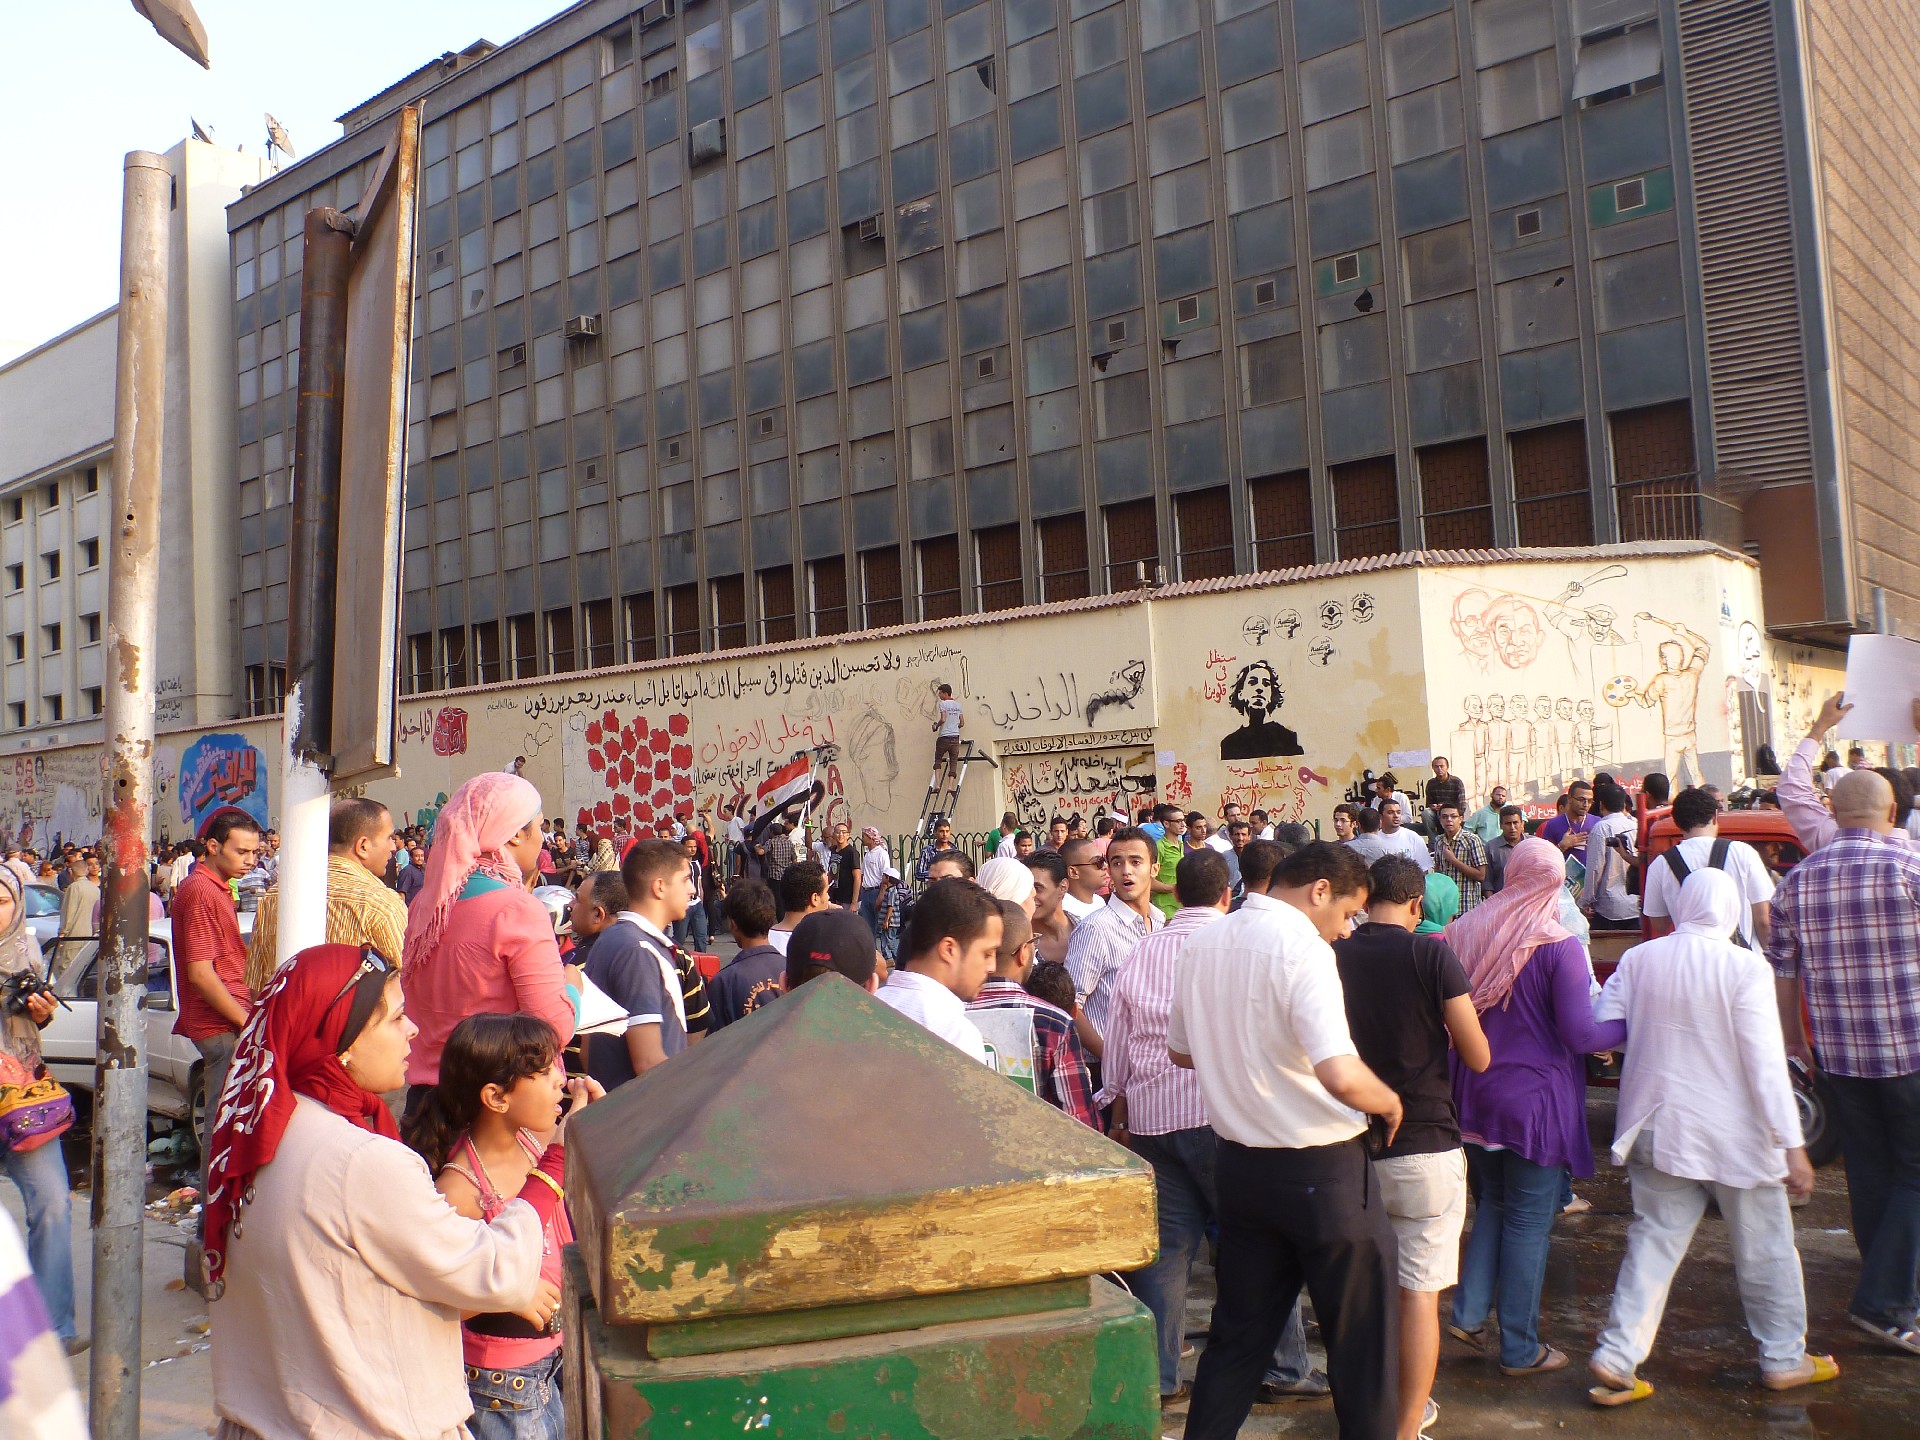 Friedliche Demonstration am Tahirplatz gegen Mohammed Karrikaturen von Charly Hebdo